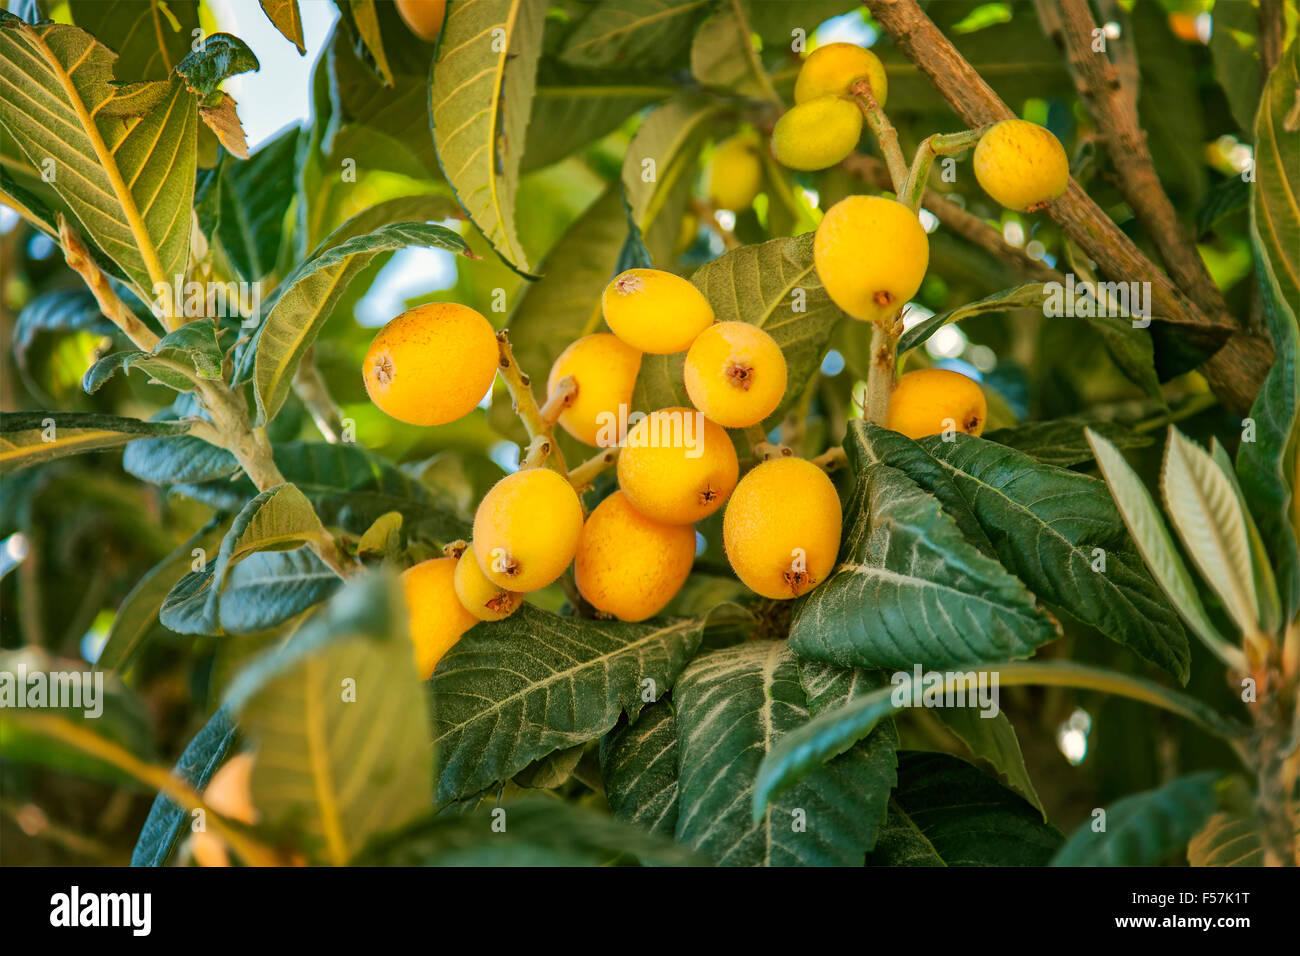 Image of ripe Loquat fruit (Eriobotrya japonica). Stock Photo